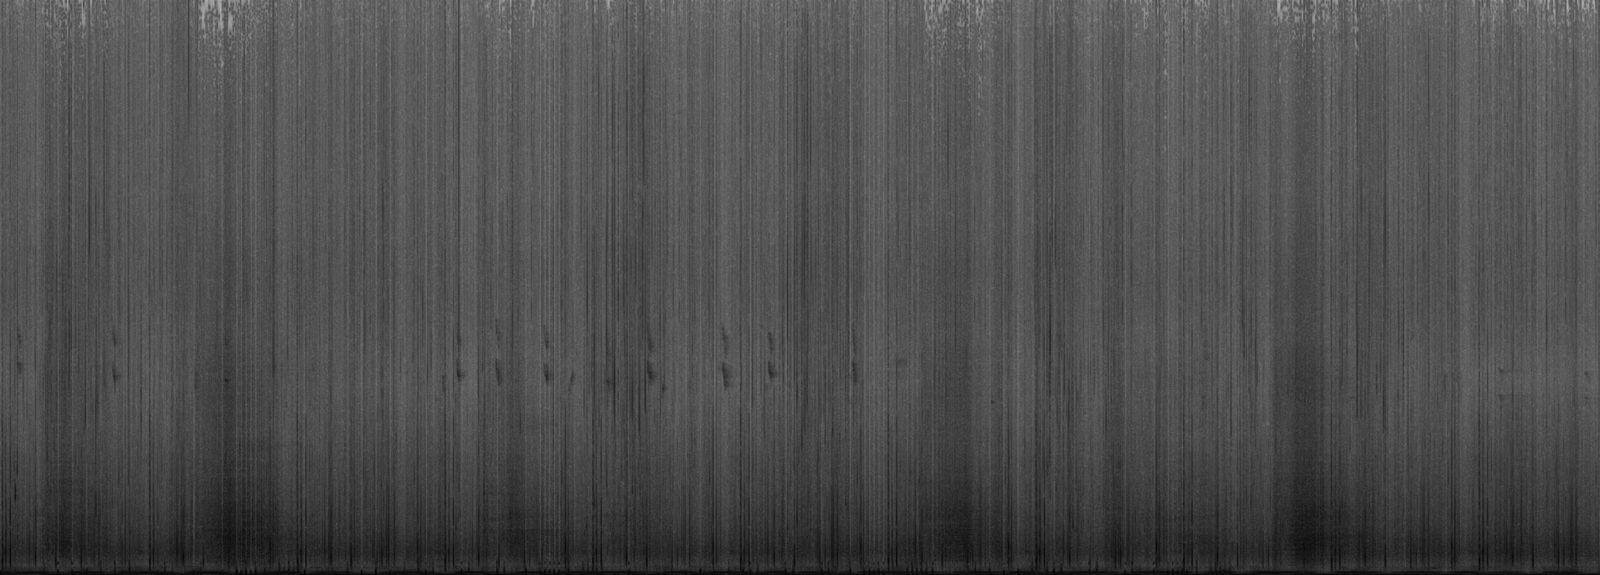 © Jošt Dolinšek - Soundscape spectrogram no. 3 / visualisation initially made for printed matter